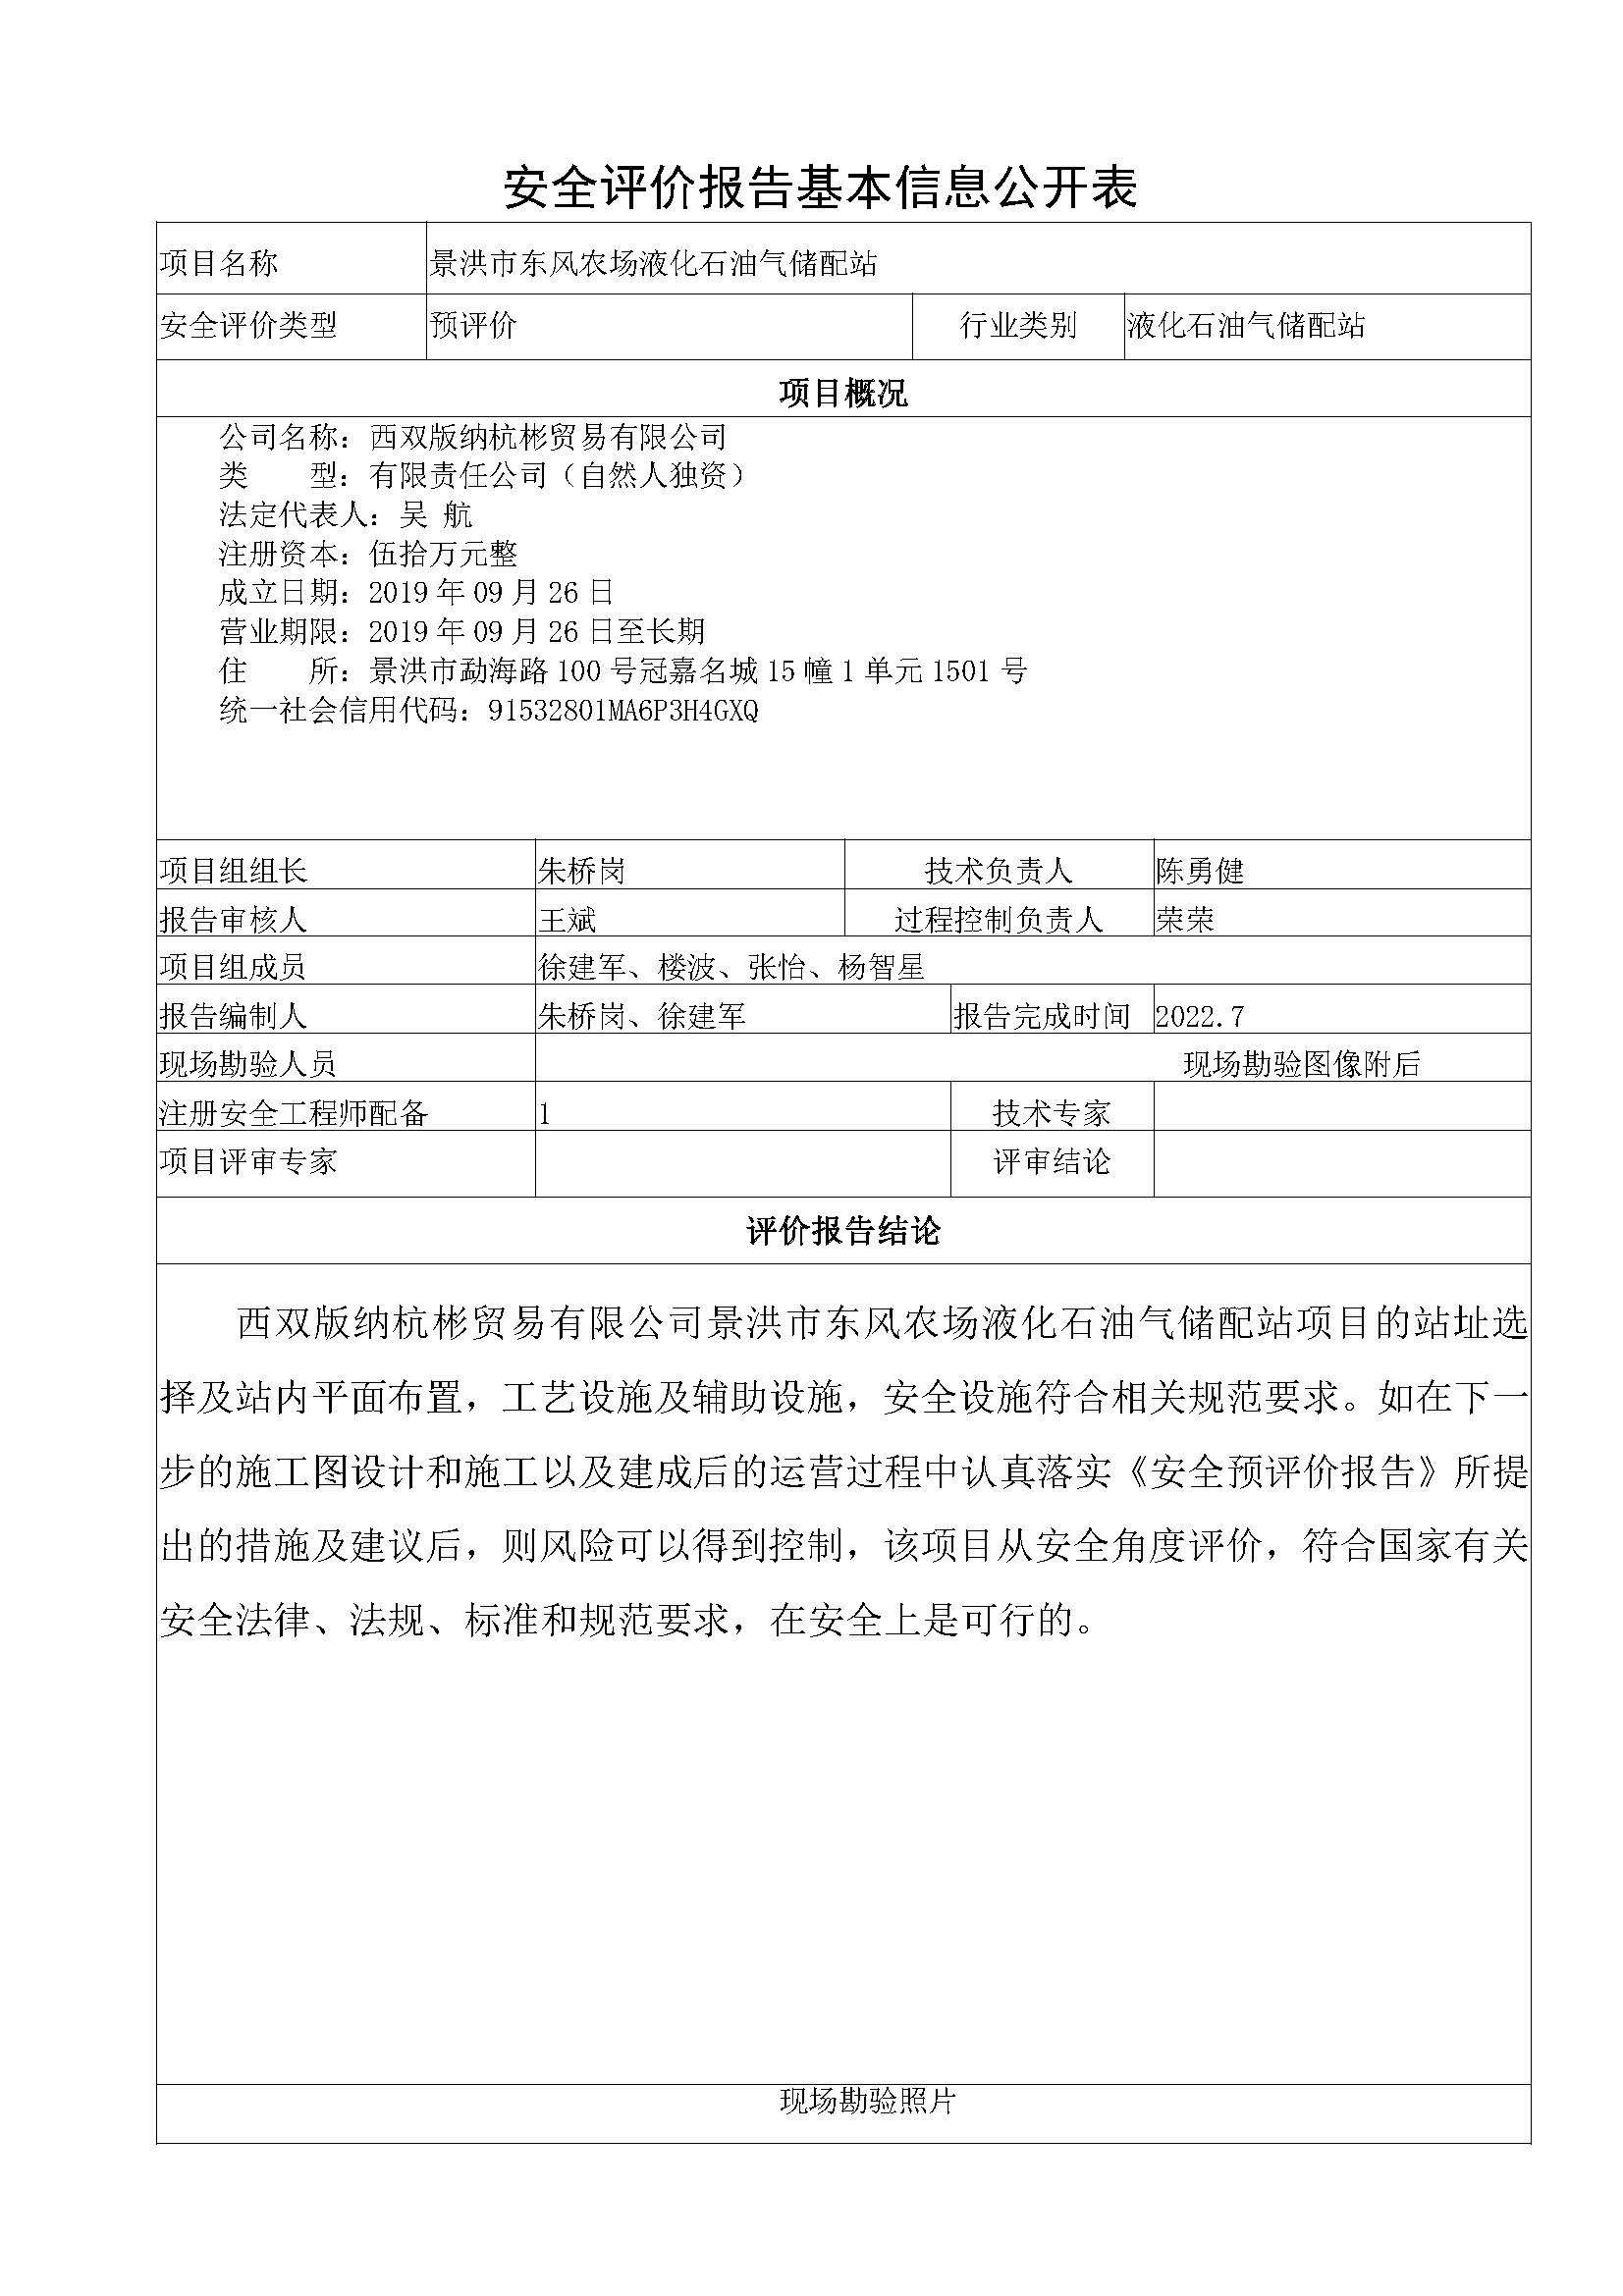 景洪市东风农场液化石油气储配站安全评价报告基本信息公开表